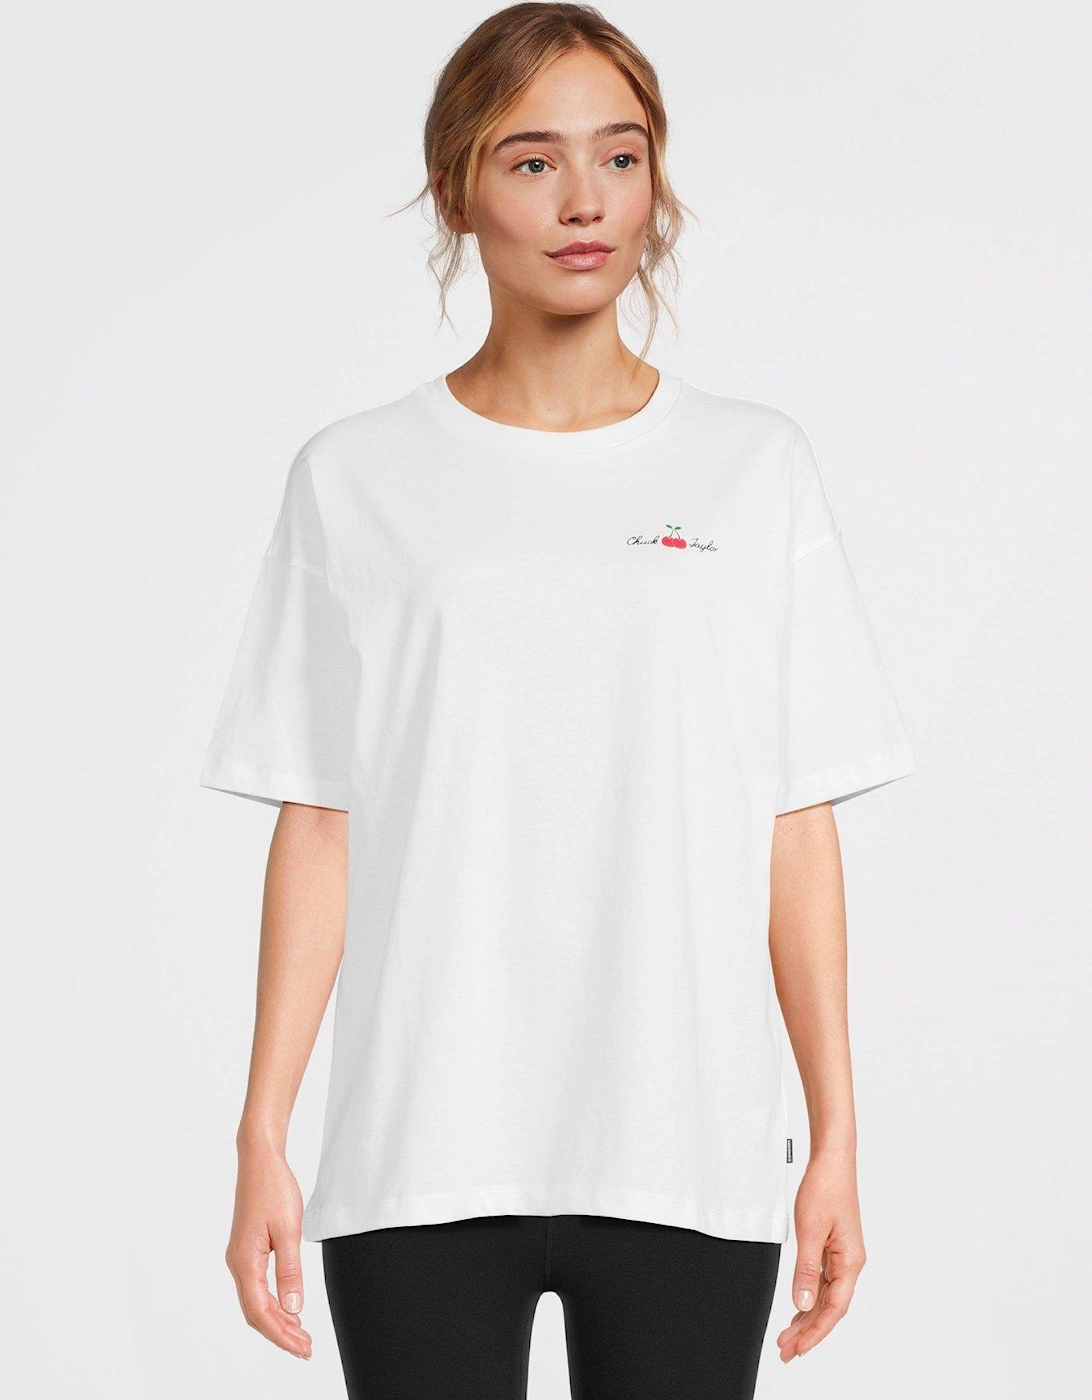 Womens Oversized Cherry T-shirt - White, 6 of 5